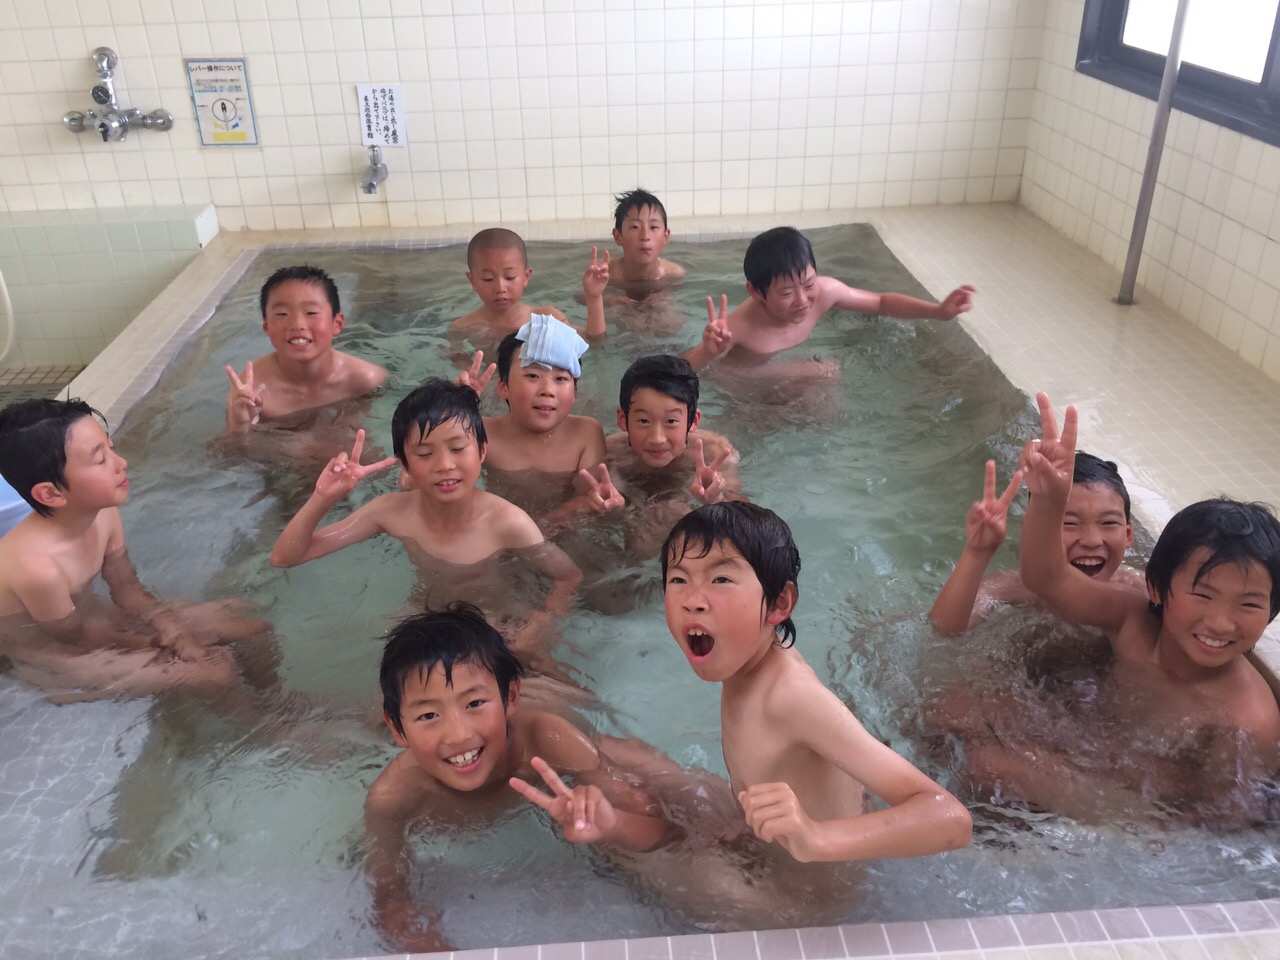 ヴィッセル神戸 サッカースクールブログ Vissel Camp レポート 1日目 入浴 夕食